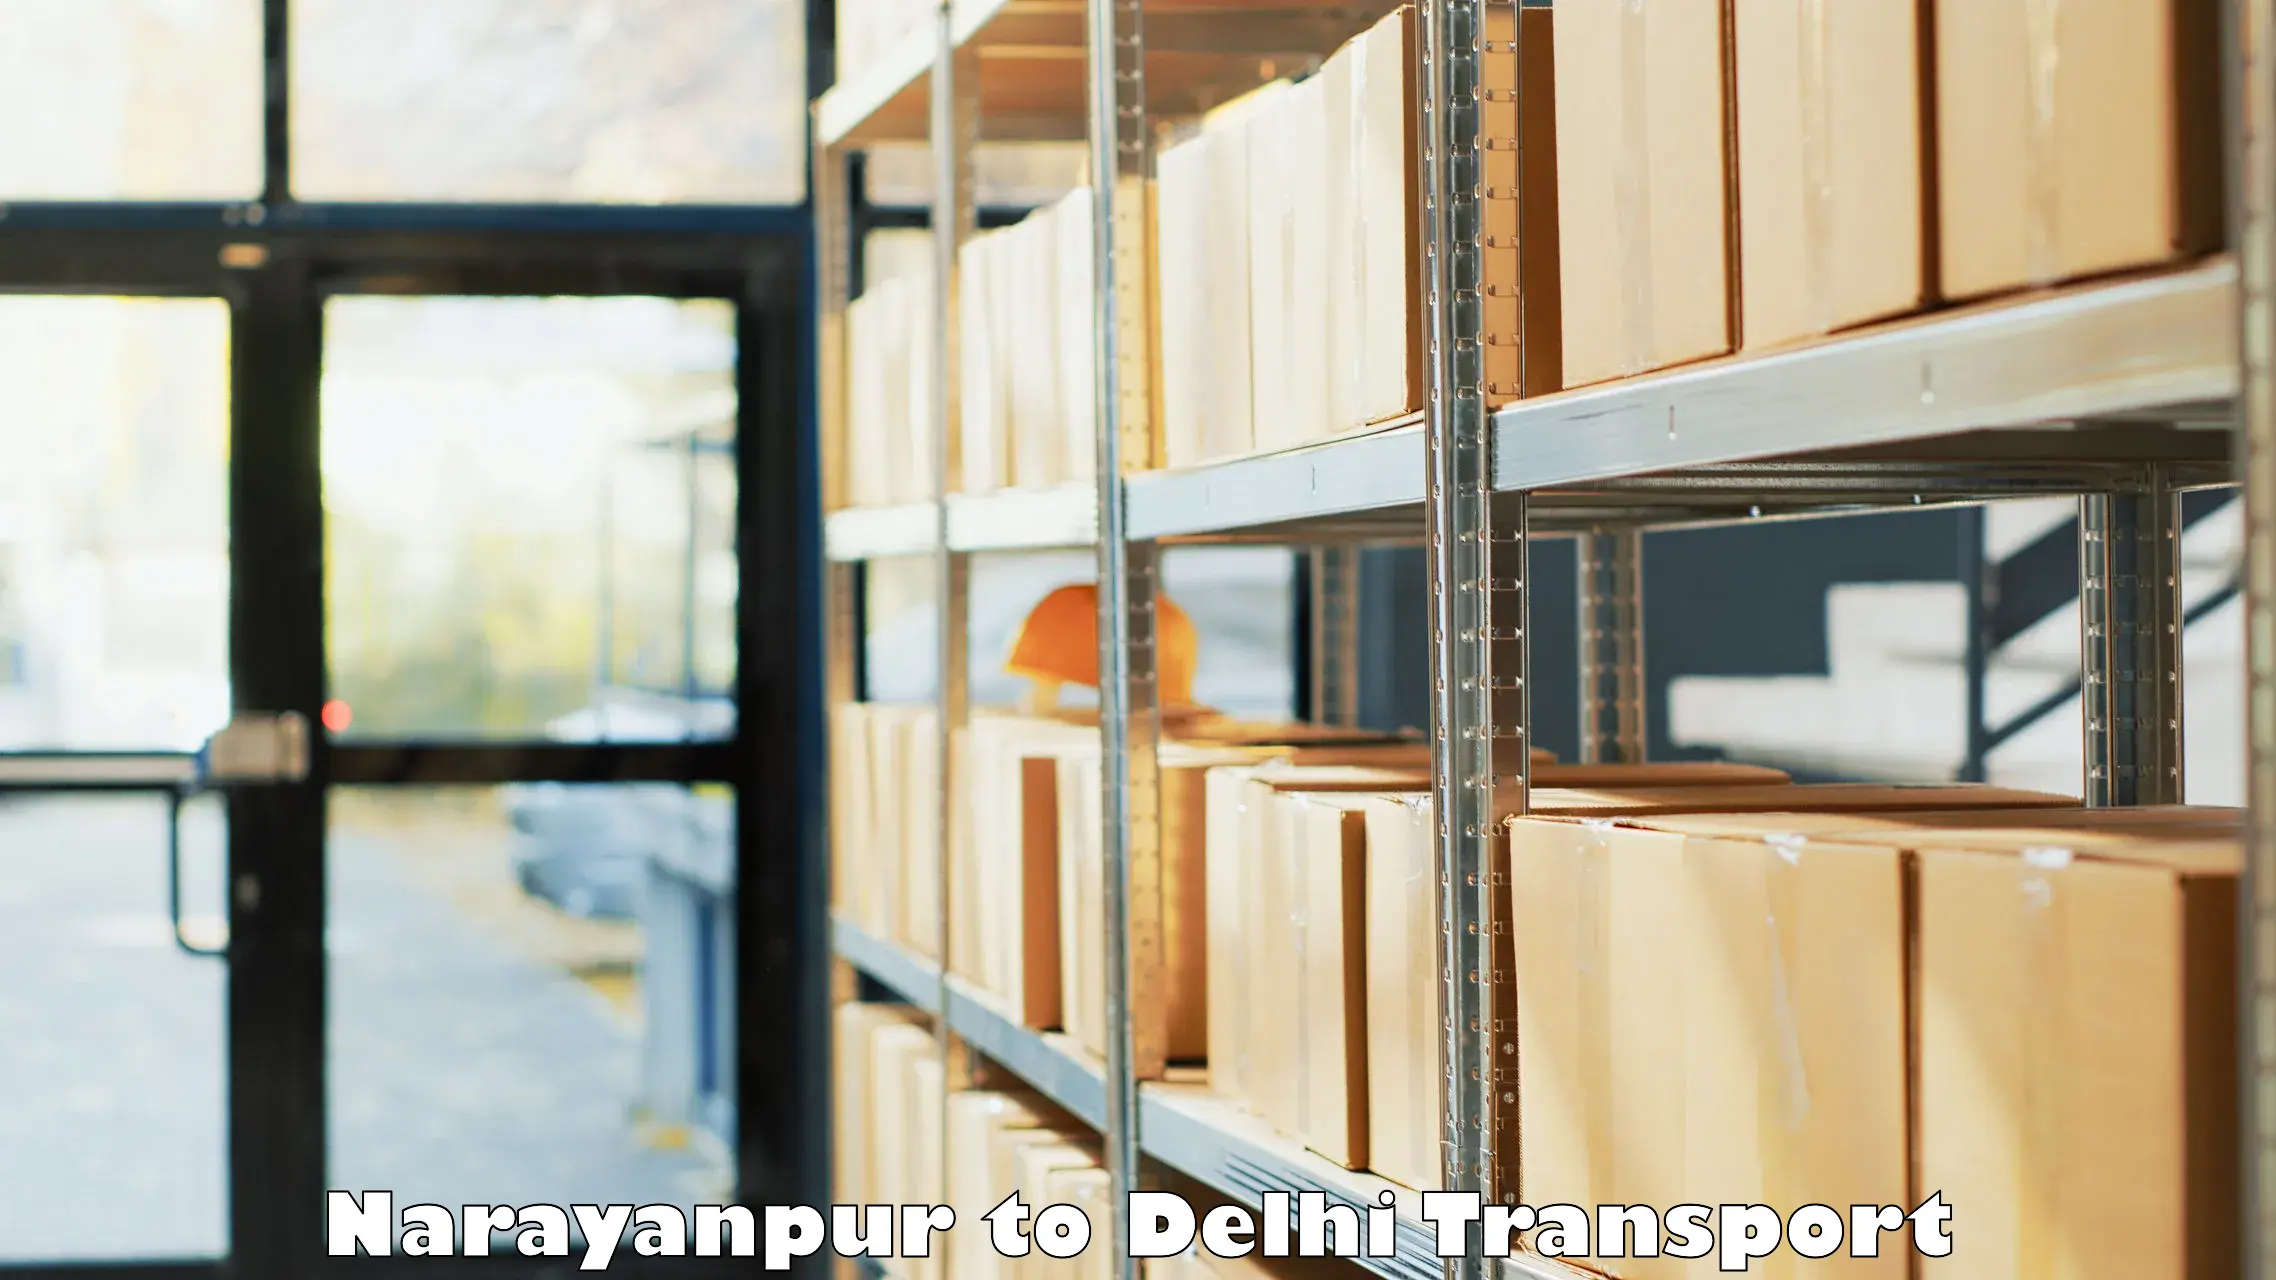 Pick up transport service Narayanpur to Sarojini Nagar